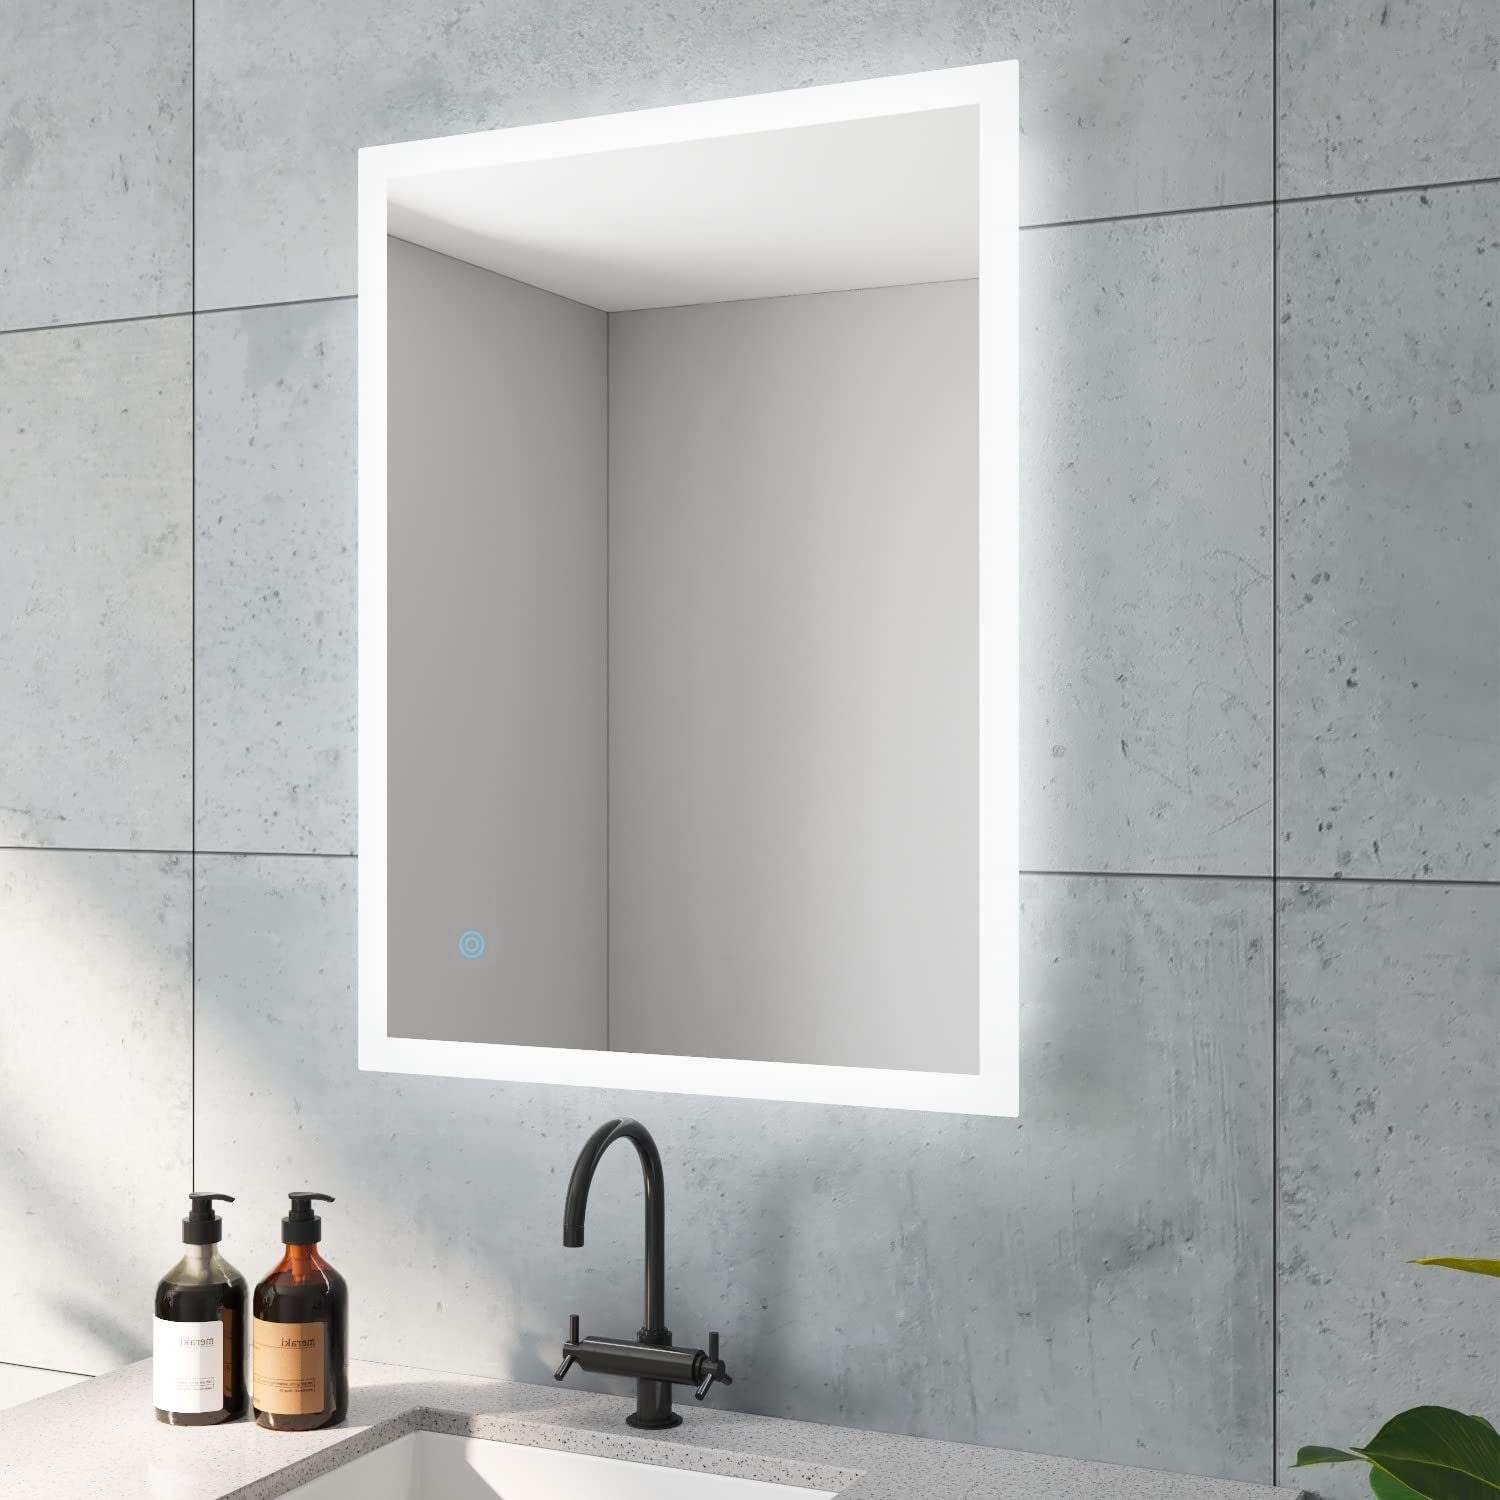 AQUABATOS LED-Lichtspiegel Led Spiegel Bad Badspiegel mit Beleuchtung 60x80 50x70cm, Kaltweiß 6400K, Touch Schalter, Dimmbar, Memory-Funktion, Antifog